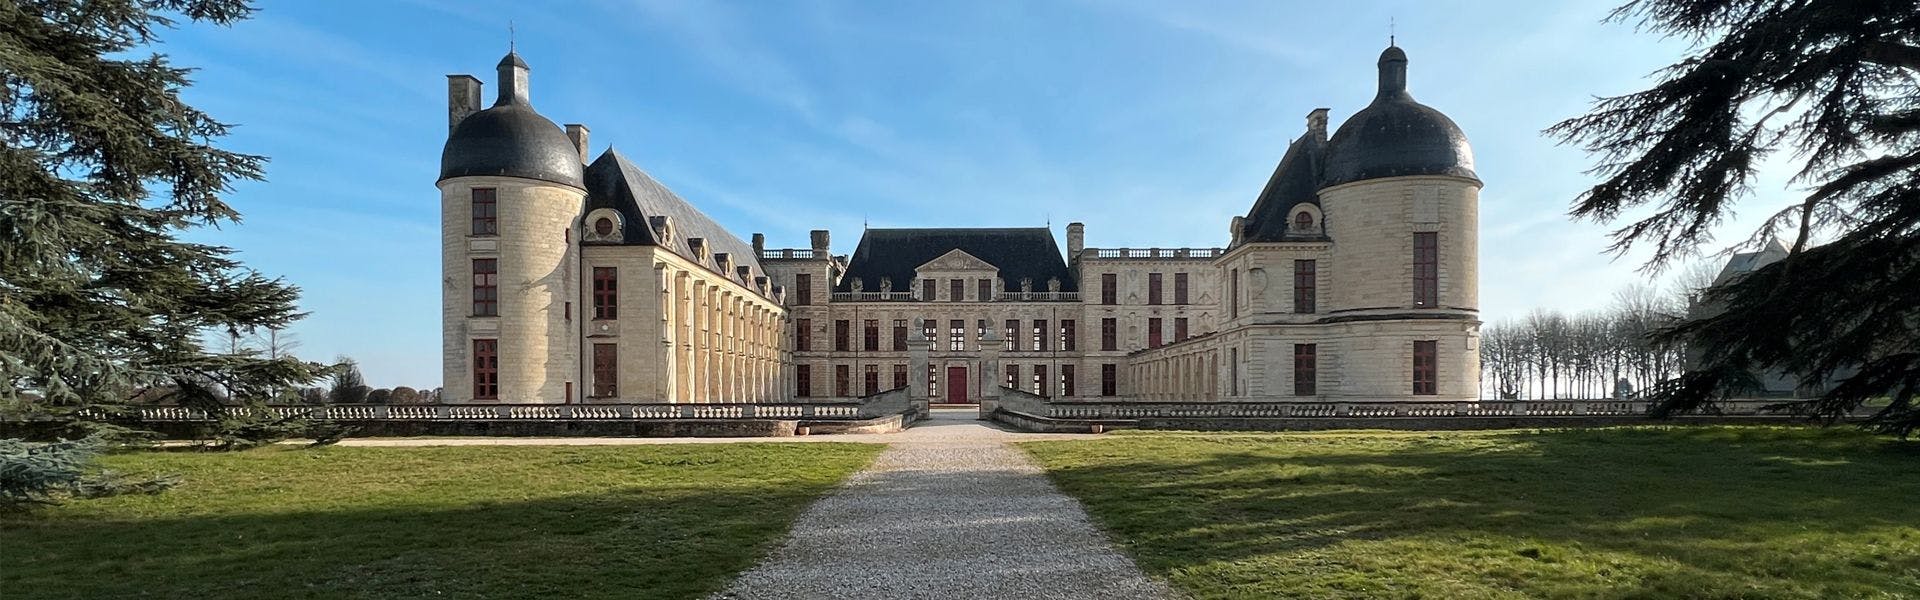 Le château d’Oiron abrite la collection d’art contemporain Curios & Mirabilia. ©Chateau d'Oiron